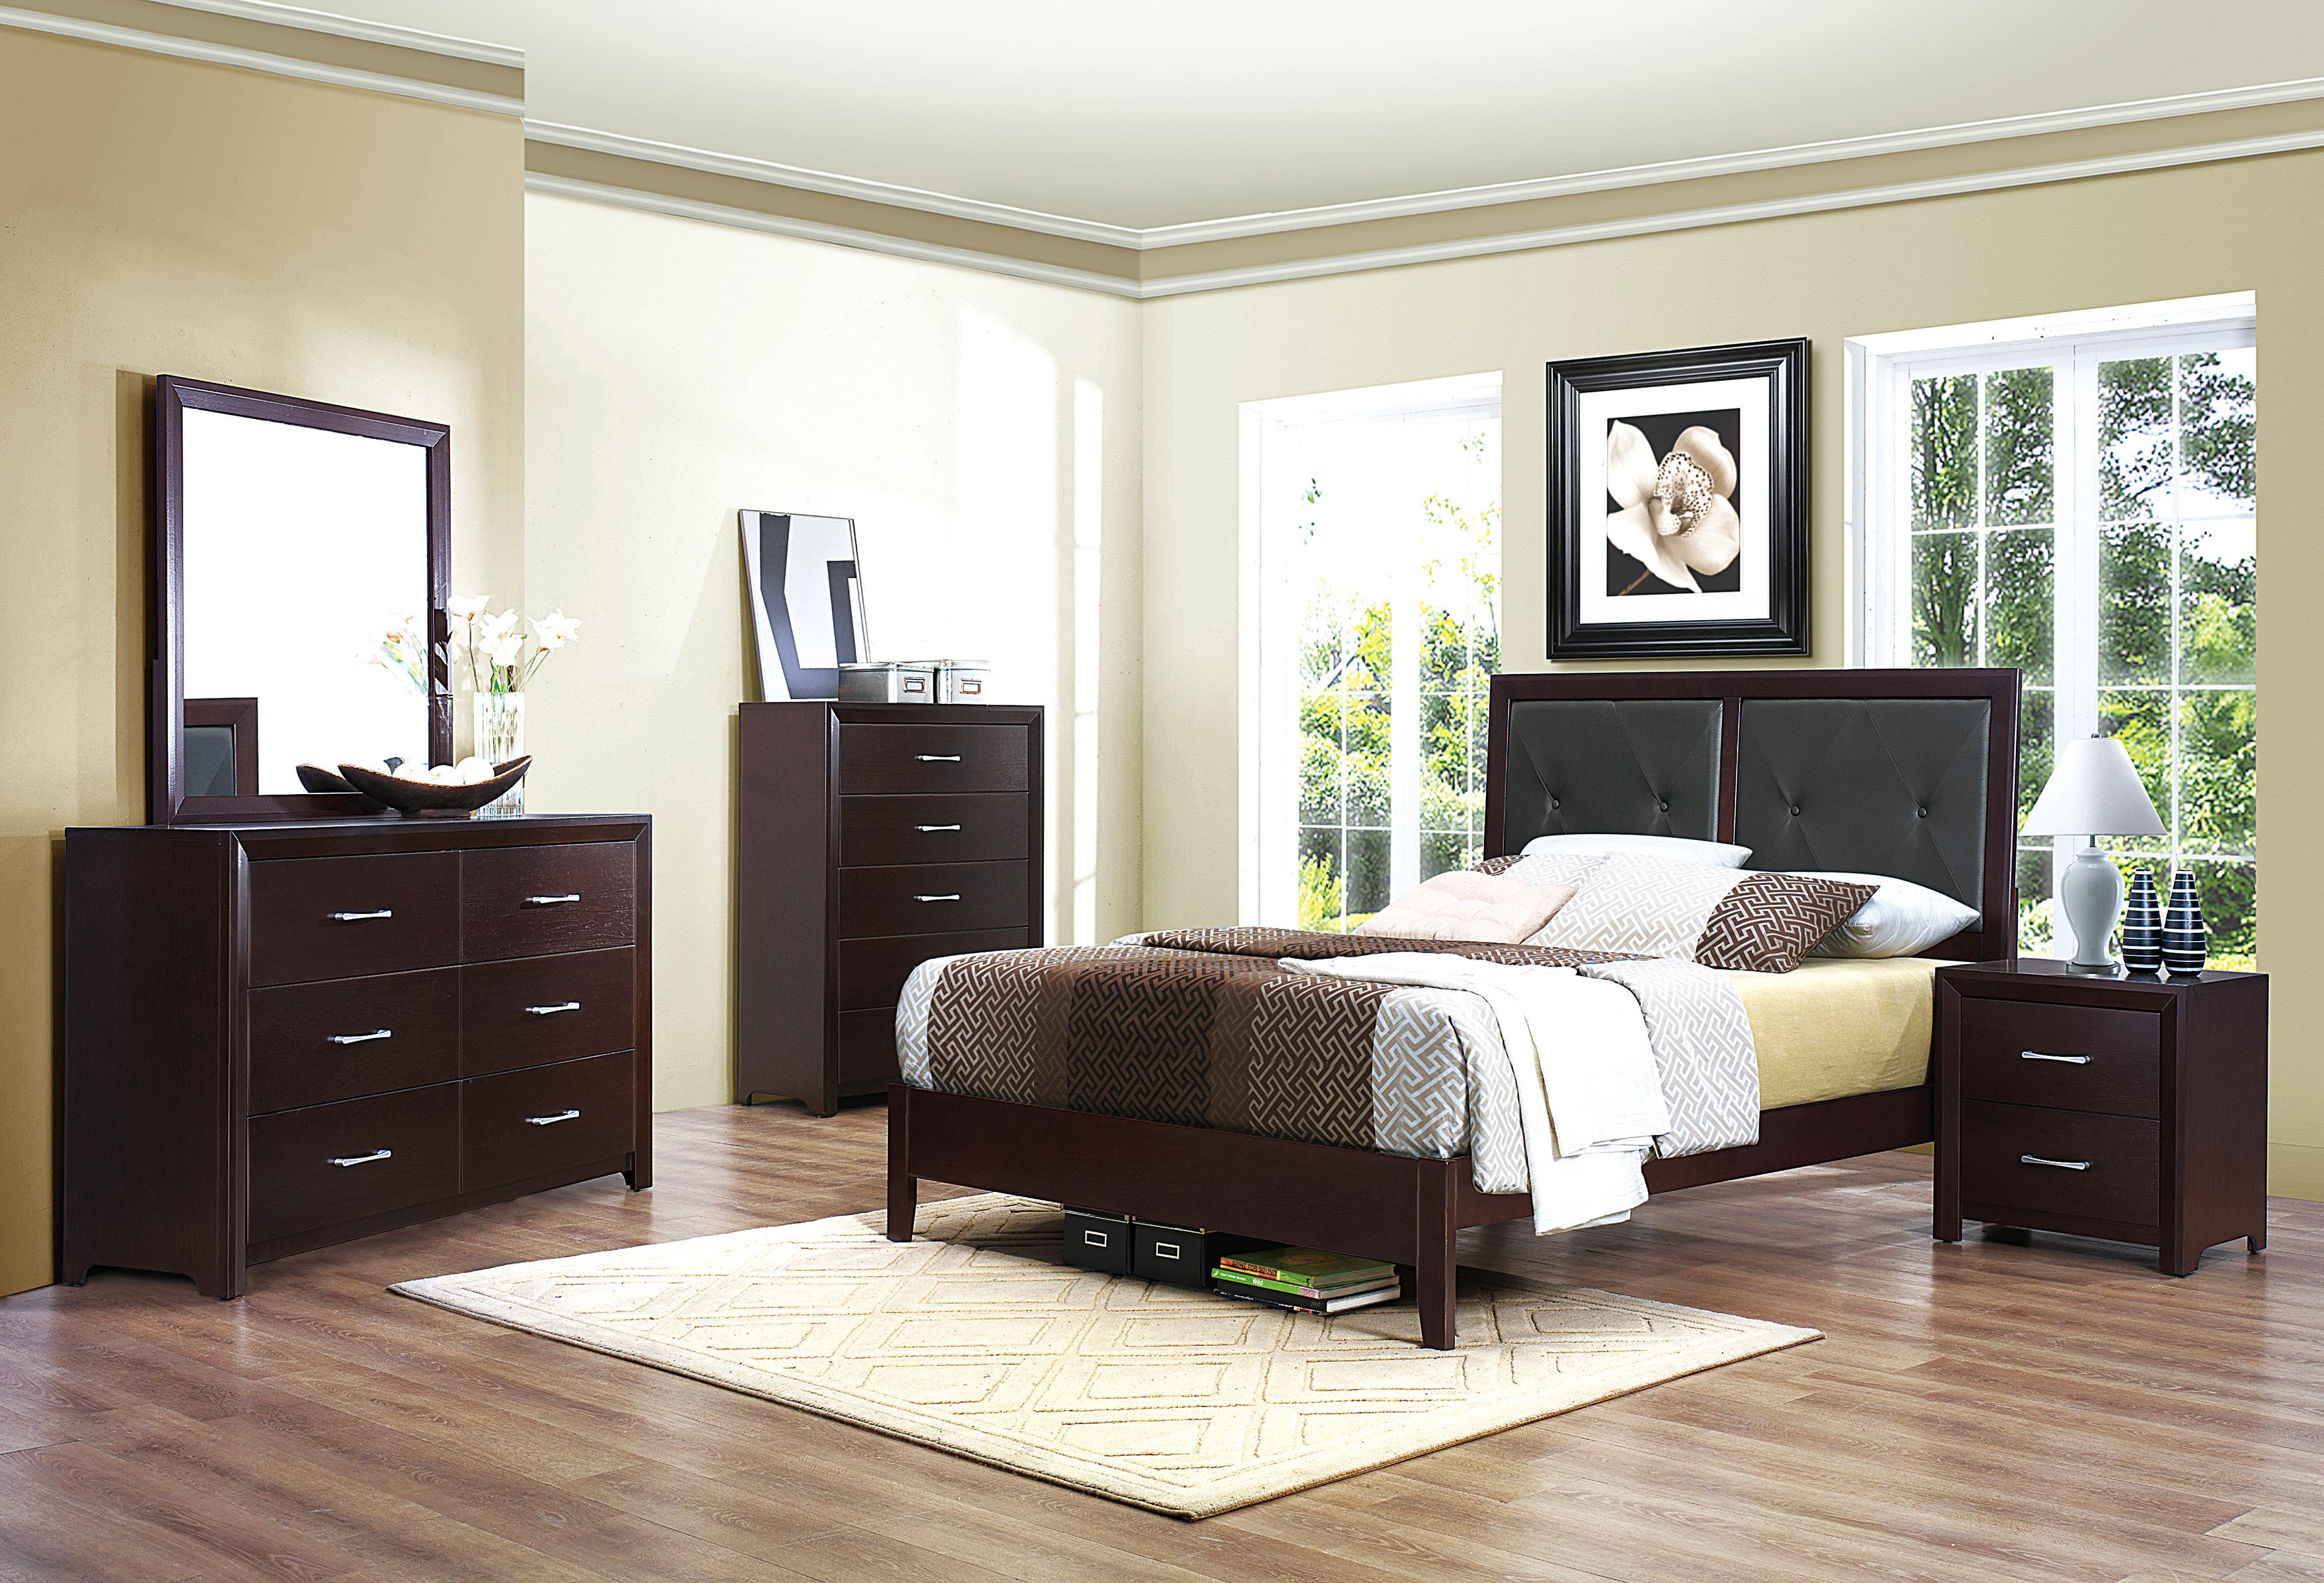 

    
Contemporary Espresso Wood Queen Bedroom Set 6pcs Homelegance 2145-1* Edina
